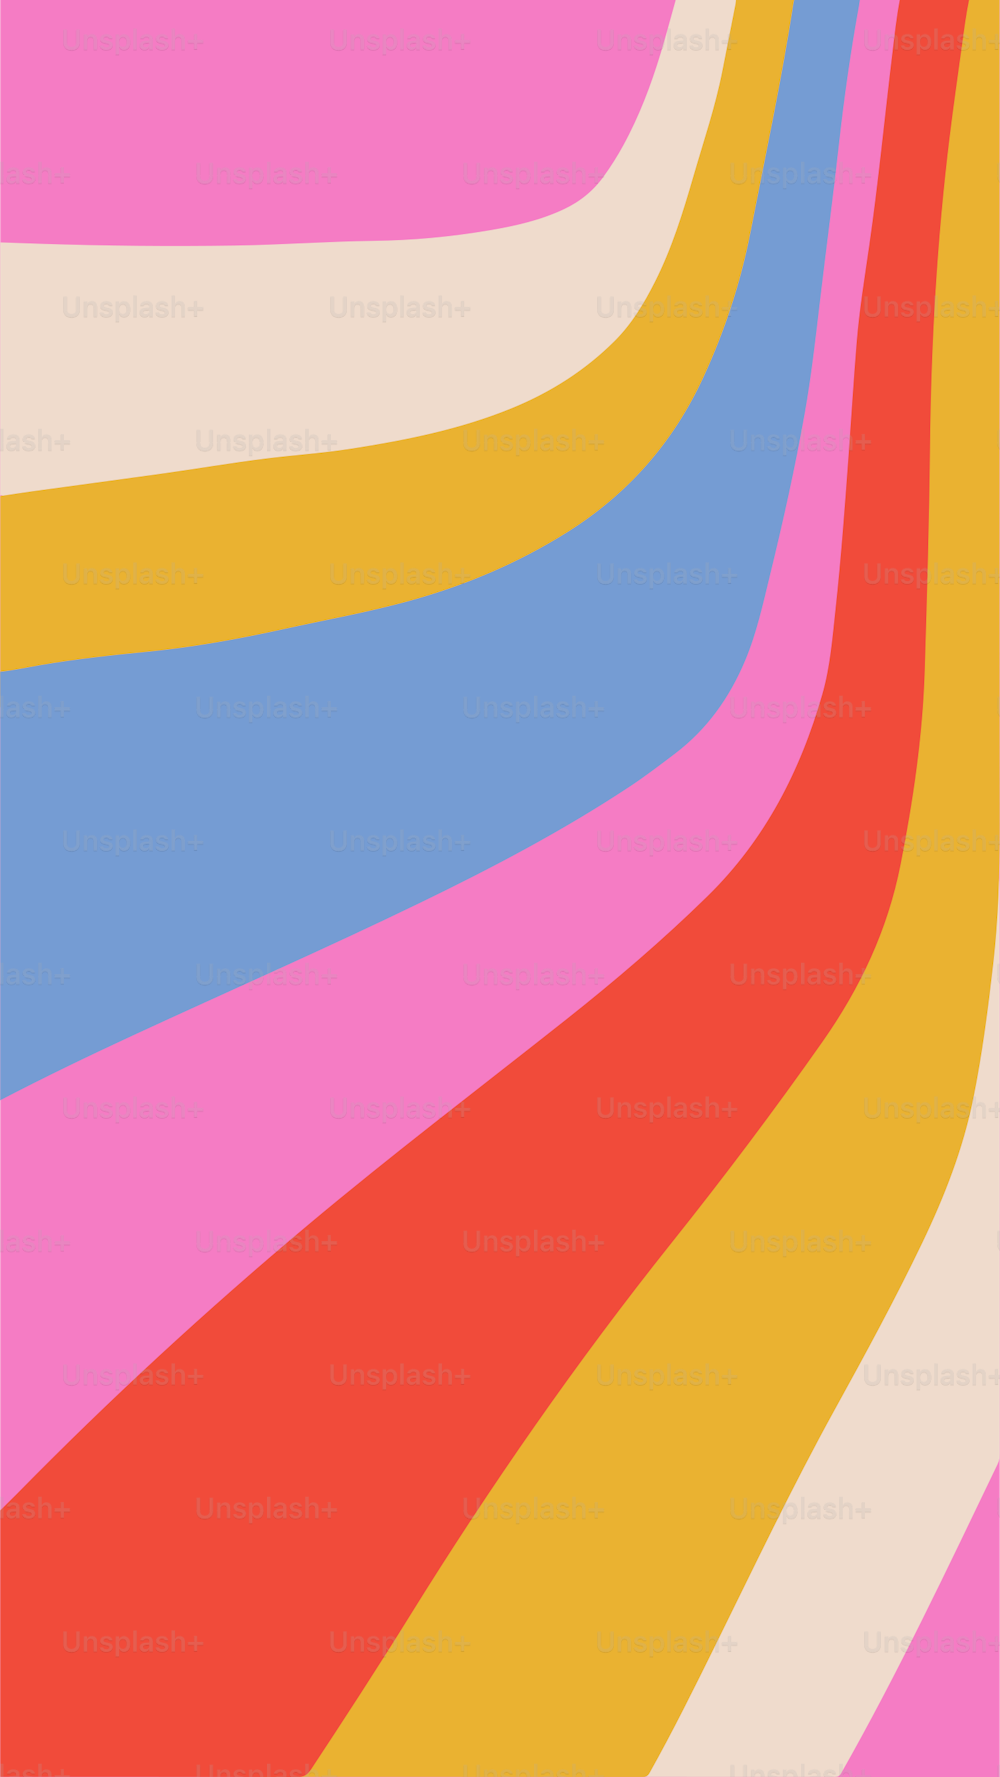 Groovy stile retrò arcobaleno onda strisce sfondo. Illustrazione verticale semplice vettoriale per i social media in dimensioni dello schermo del telefono.